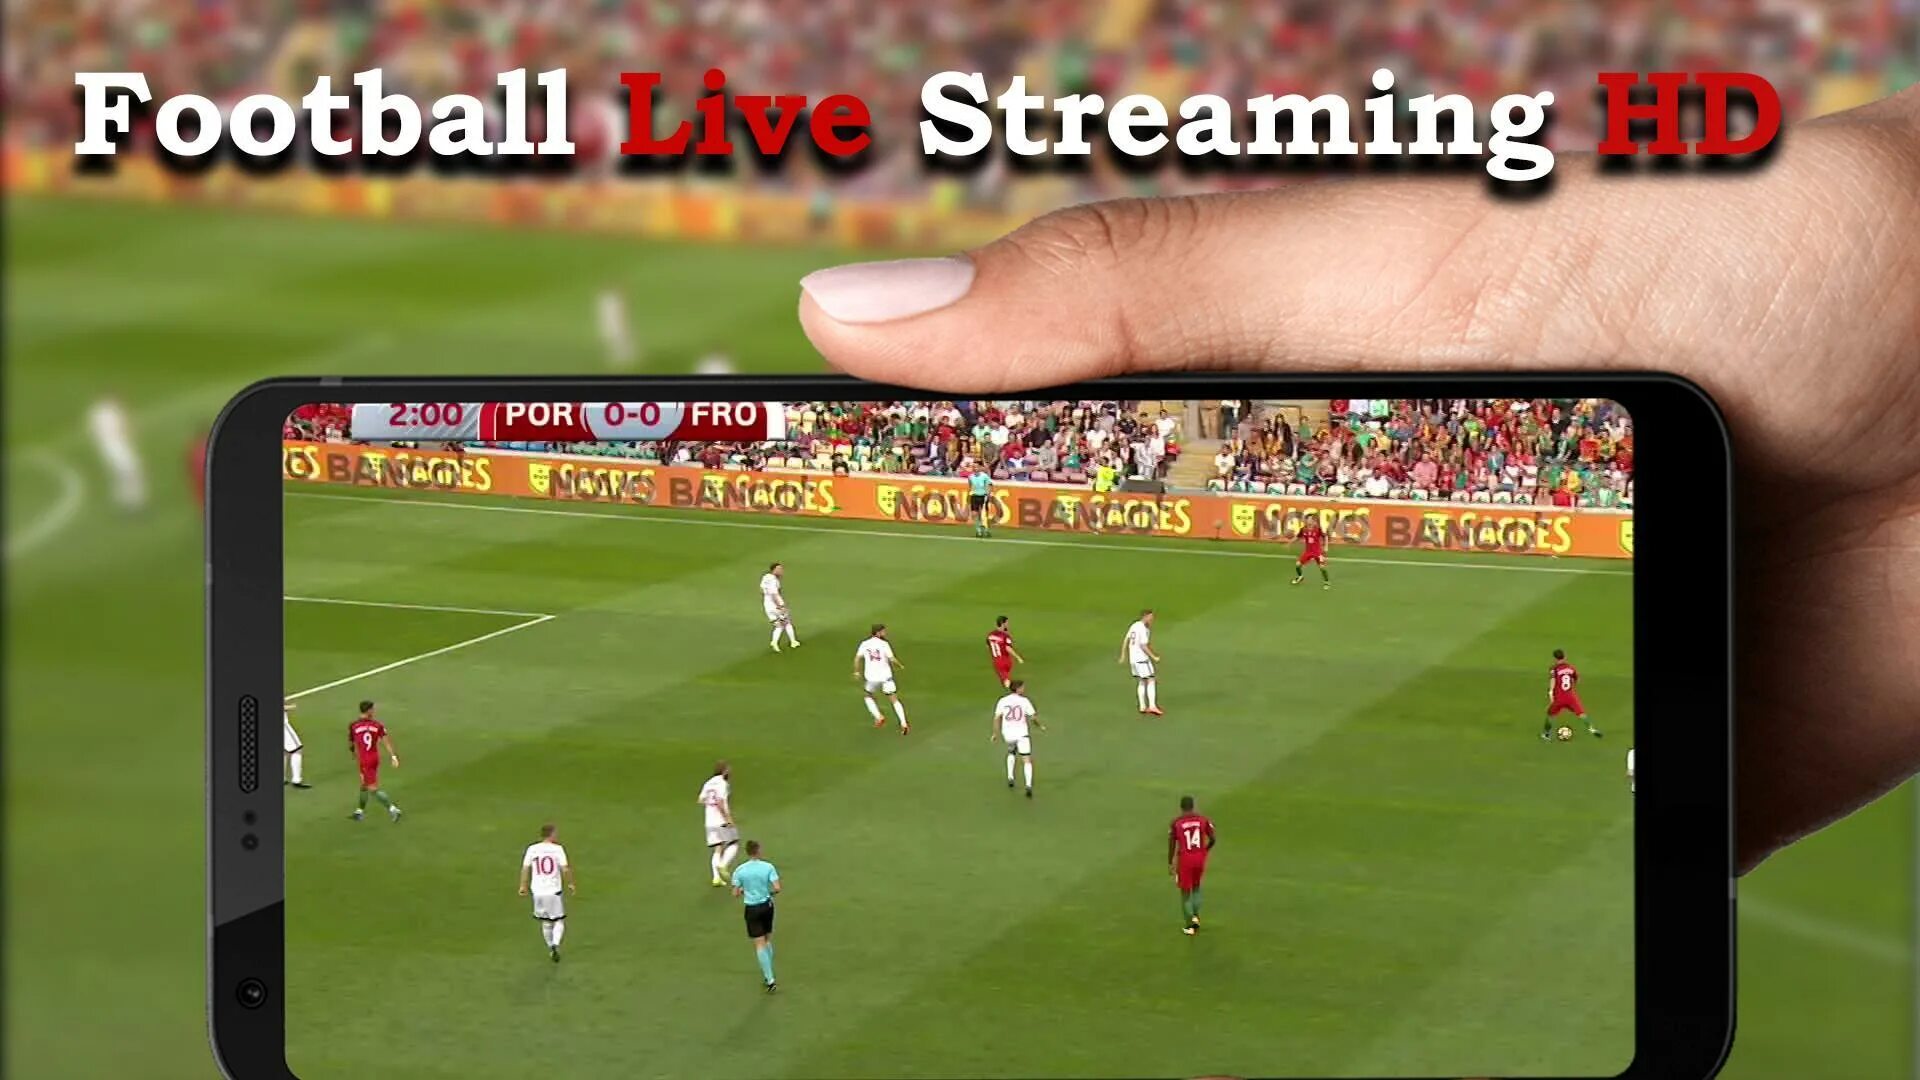 Футбольные трансляции livetv. Футбольный стрим. Live Football. Live Stream Football. Live streaming Football HD.